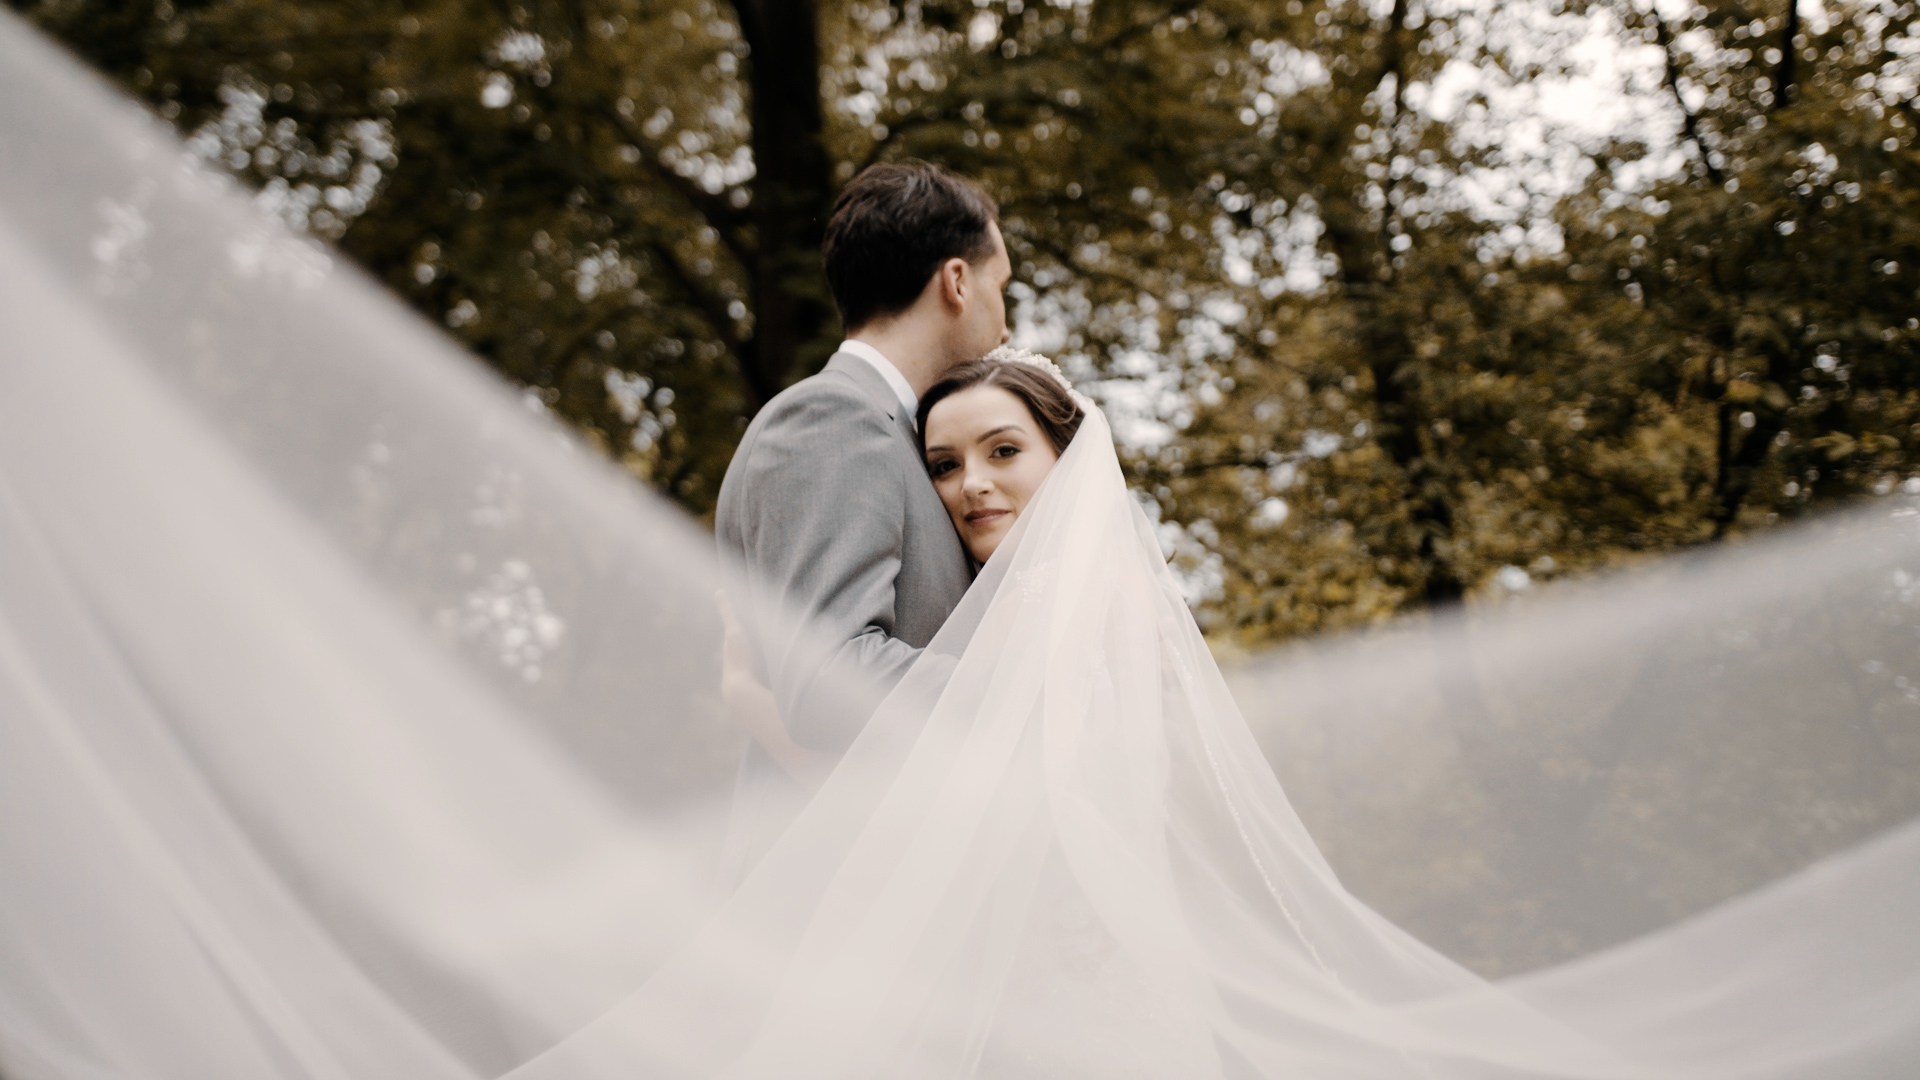 Exquisite Bride Veil